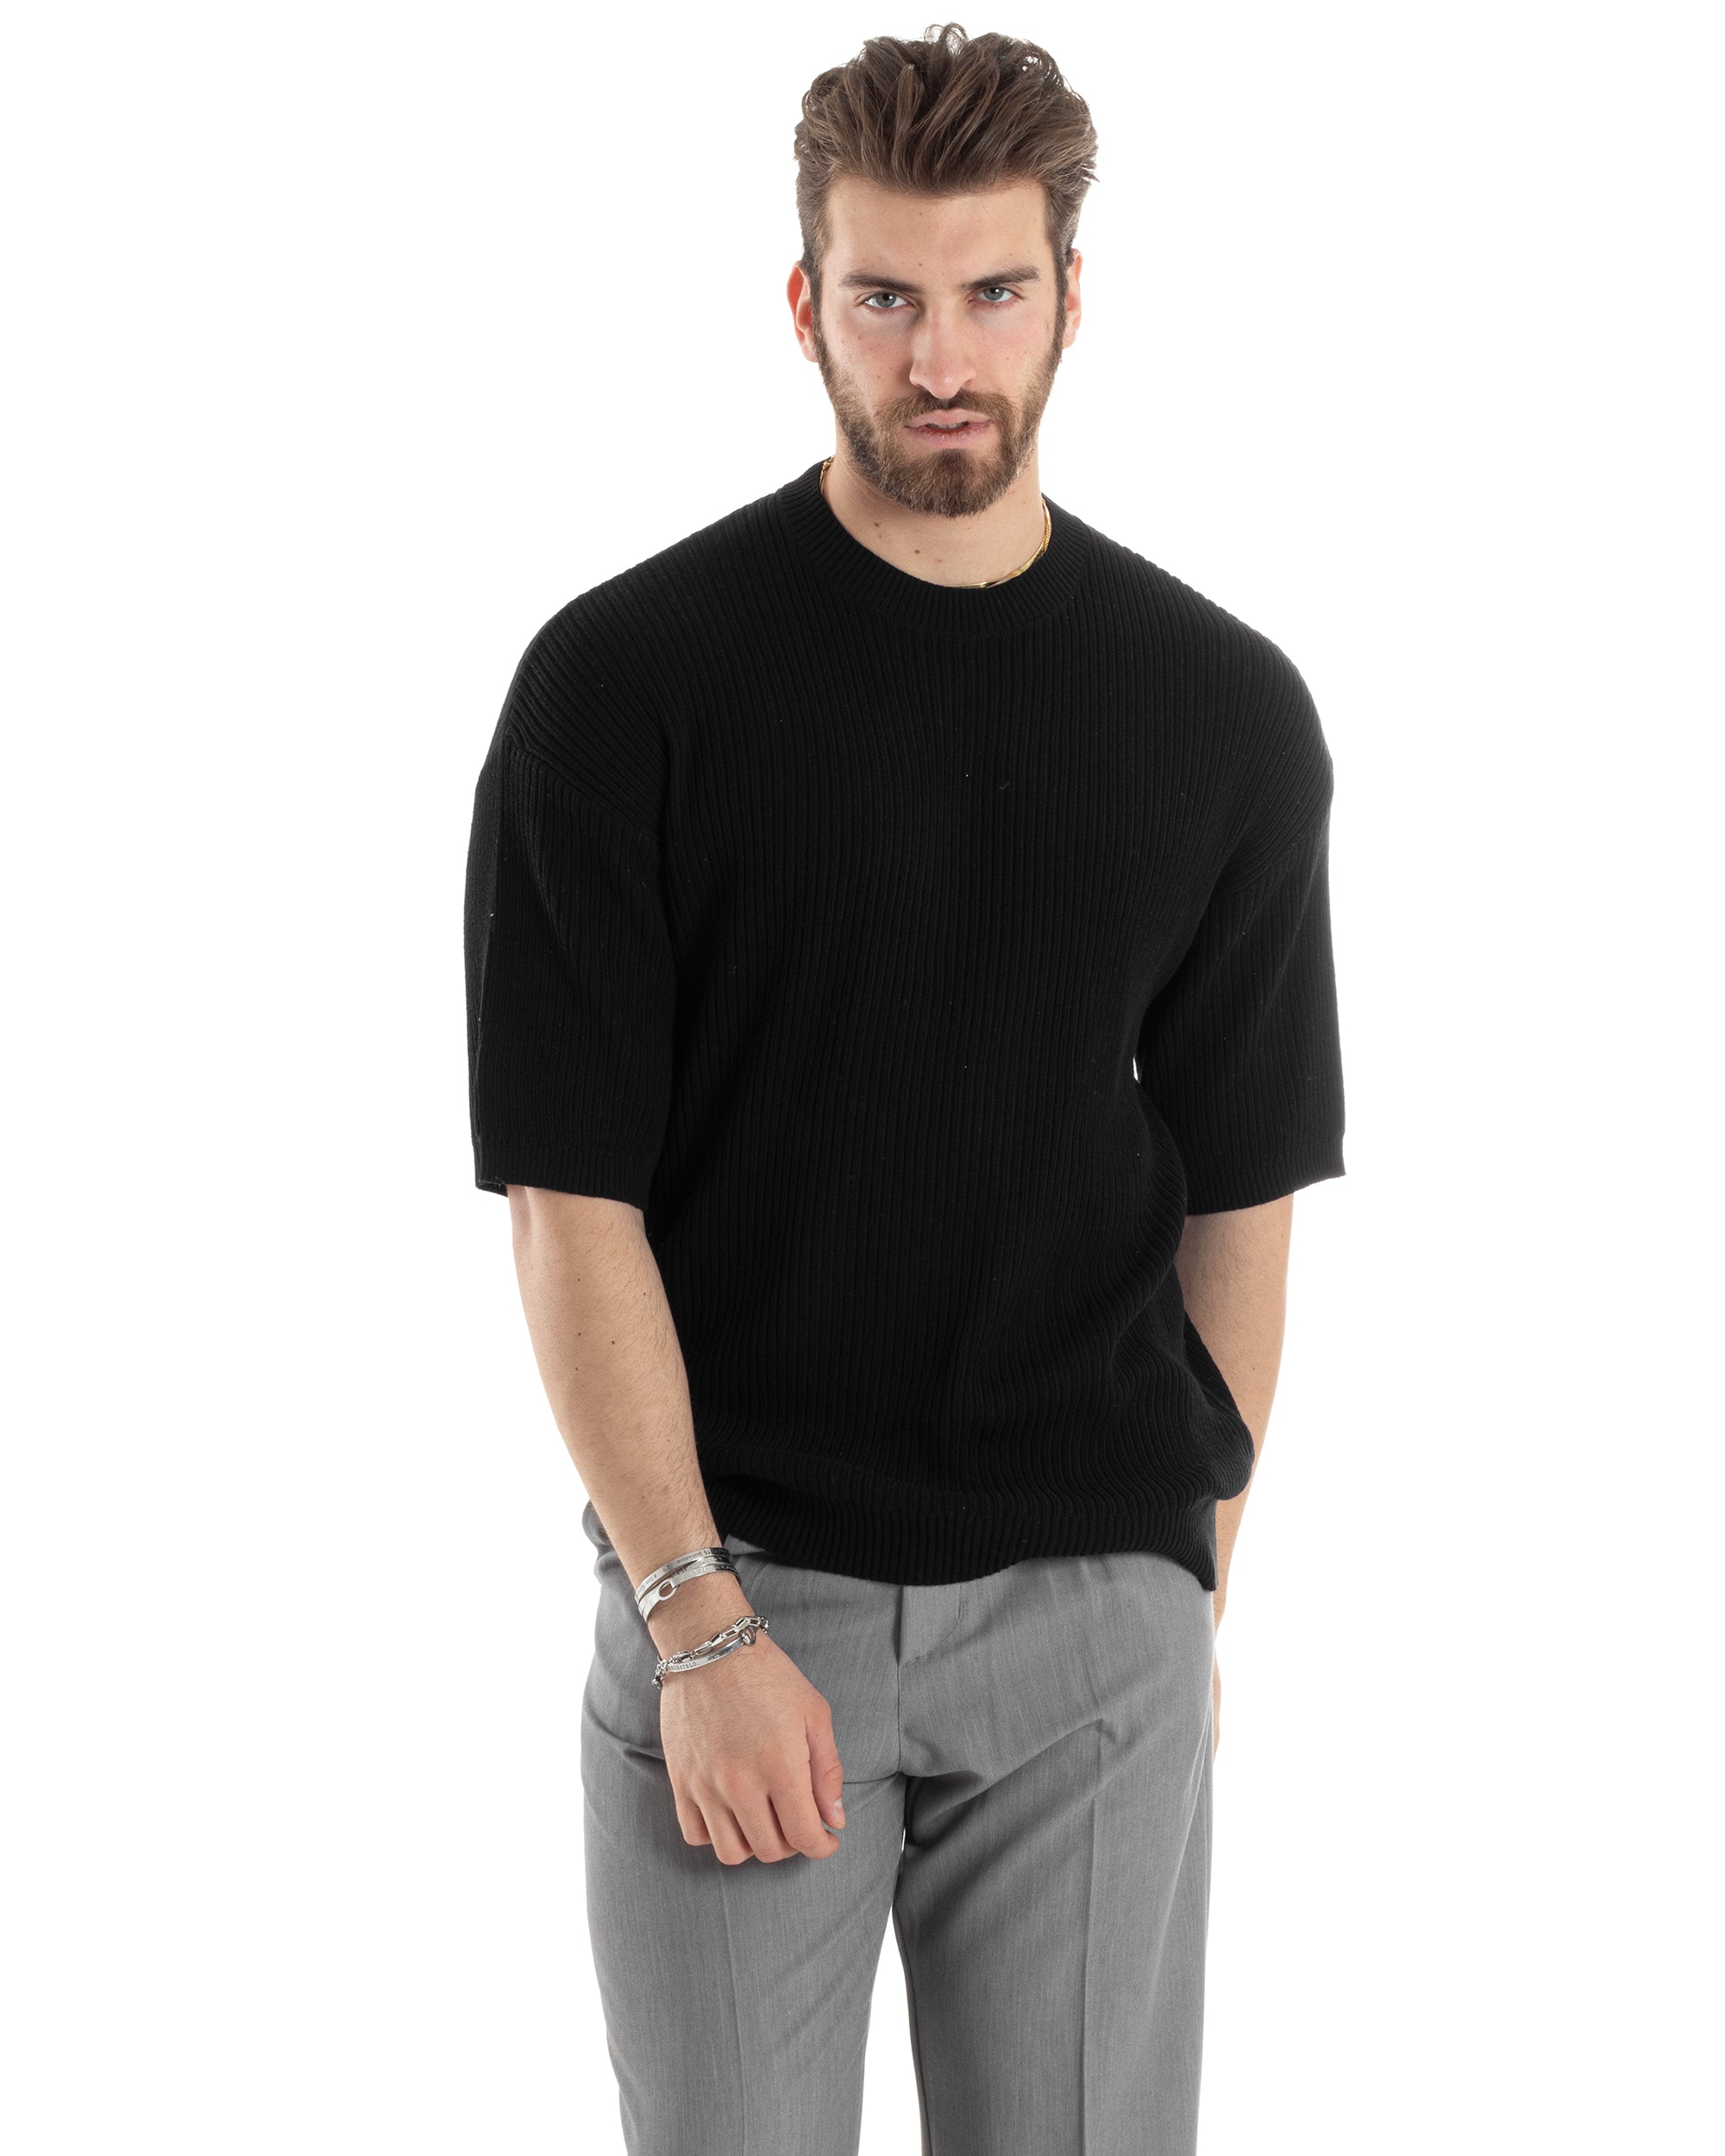 T-shirt Uomo Maglia In Filo A Costine Maniche Corte Basic Oversize Nero Casual GIOSAL-TS2999A